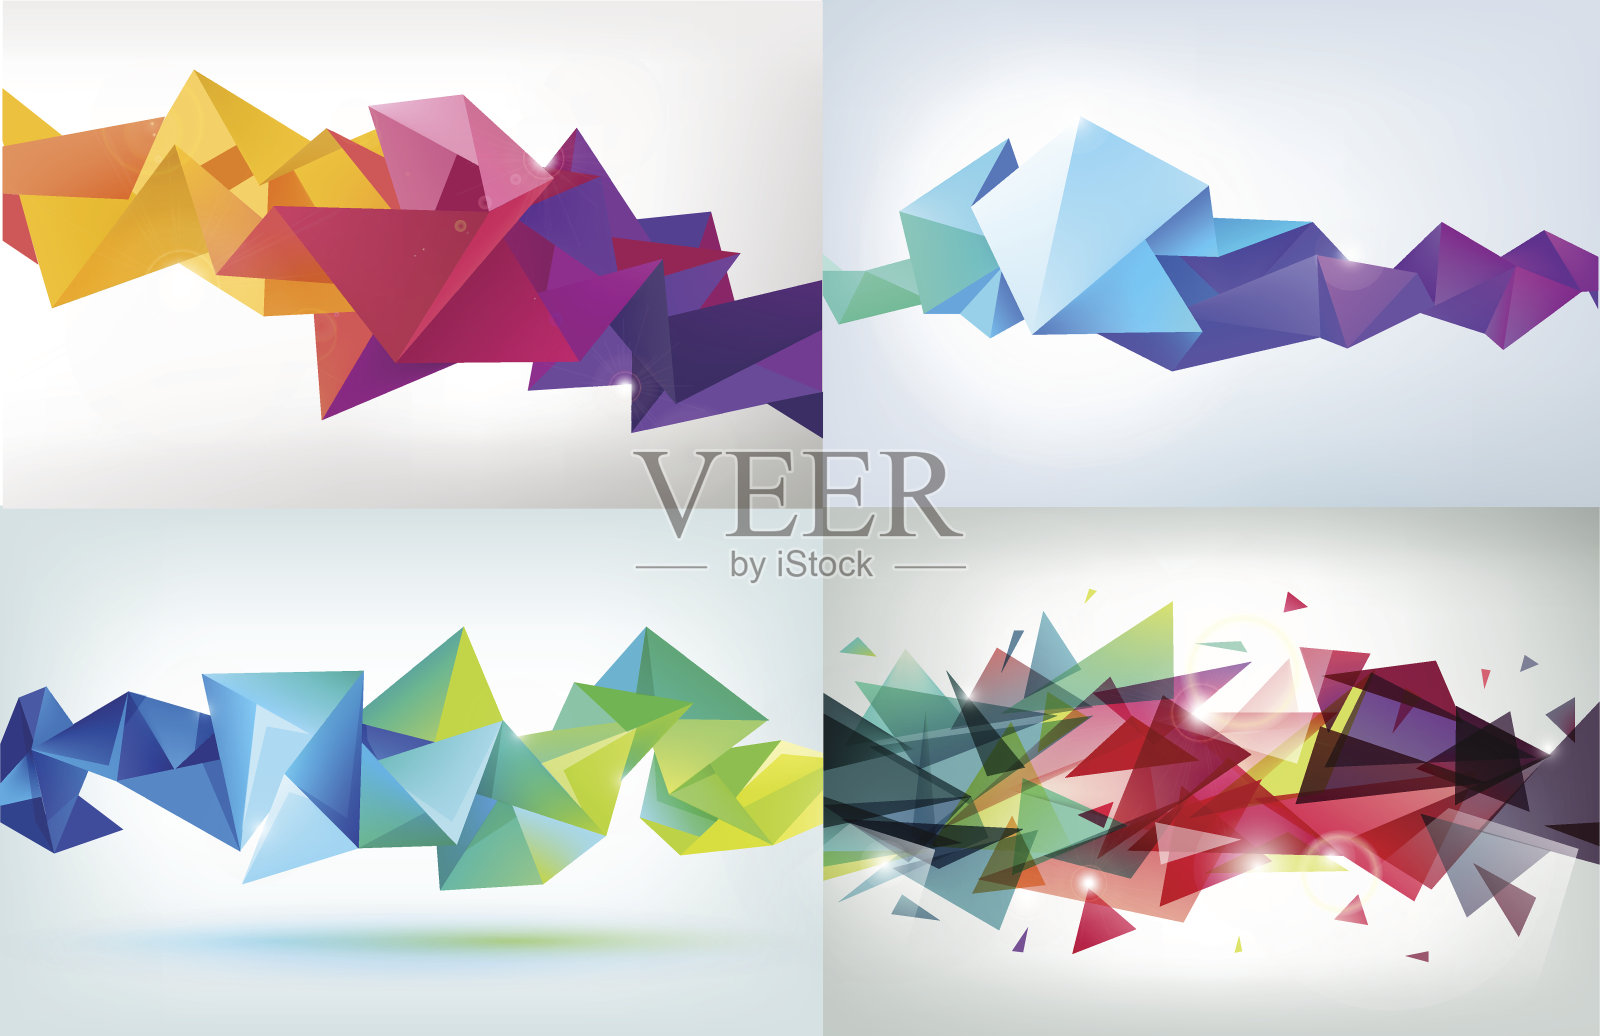 矢量集在上雕琢平面的3d水晶彩色形状插画图片素材